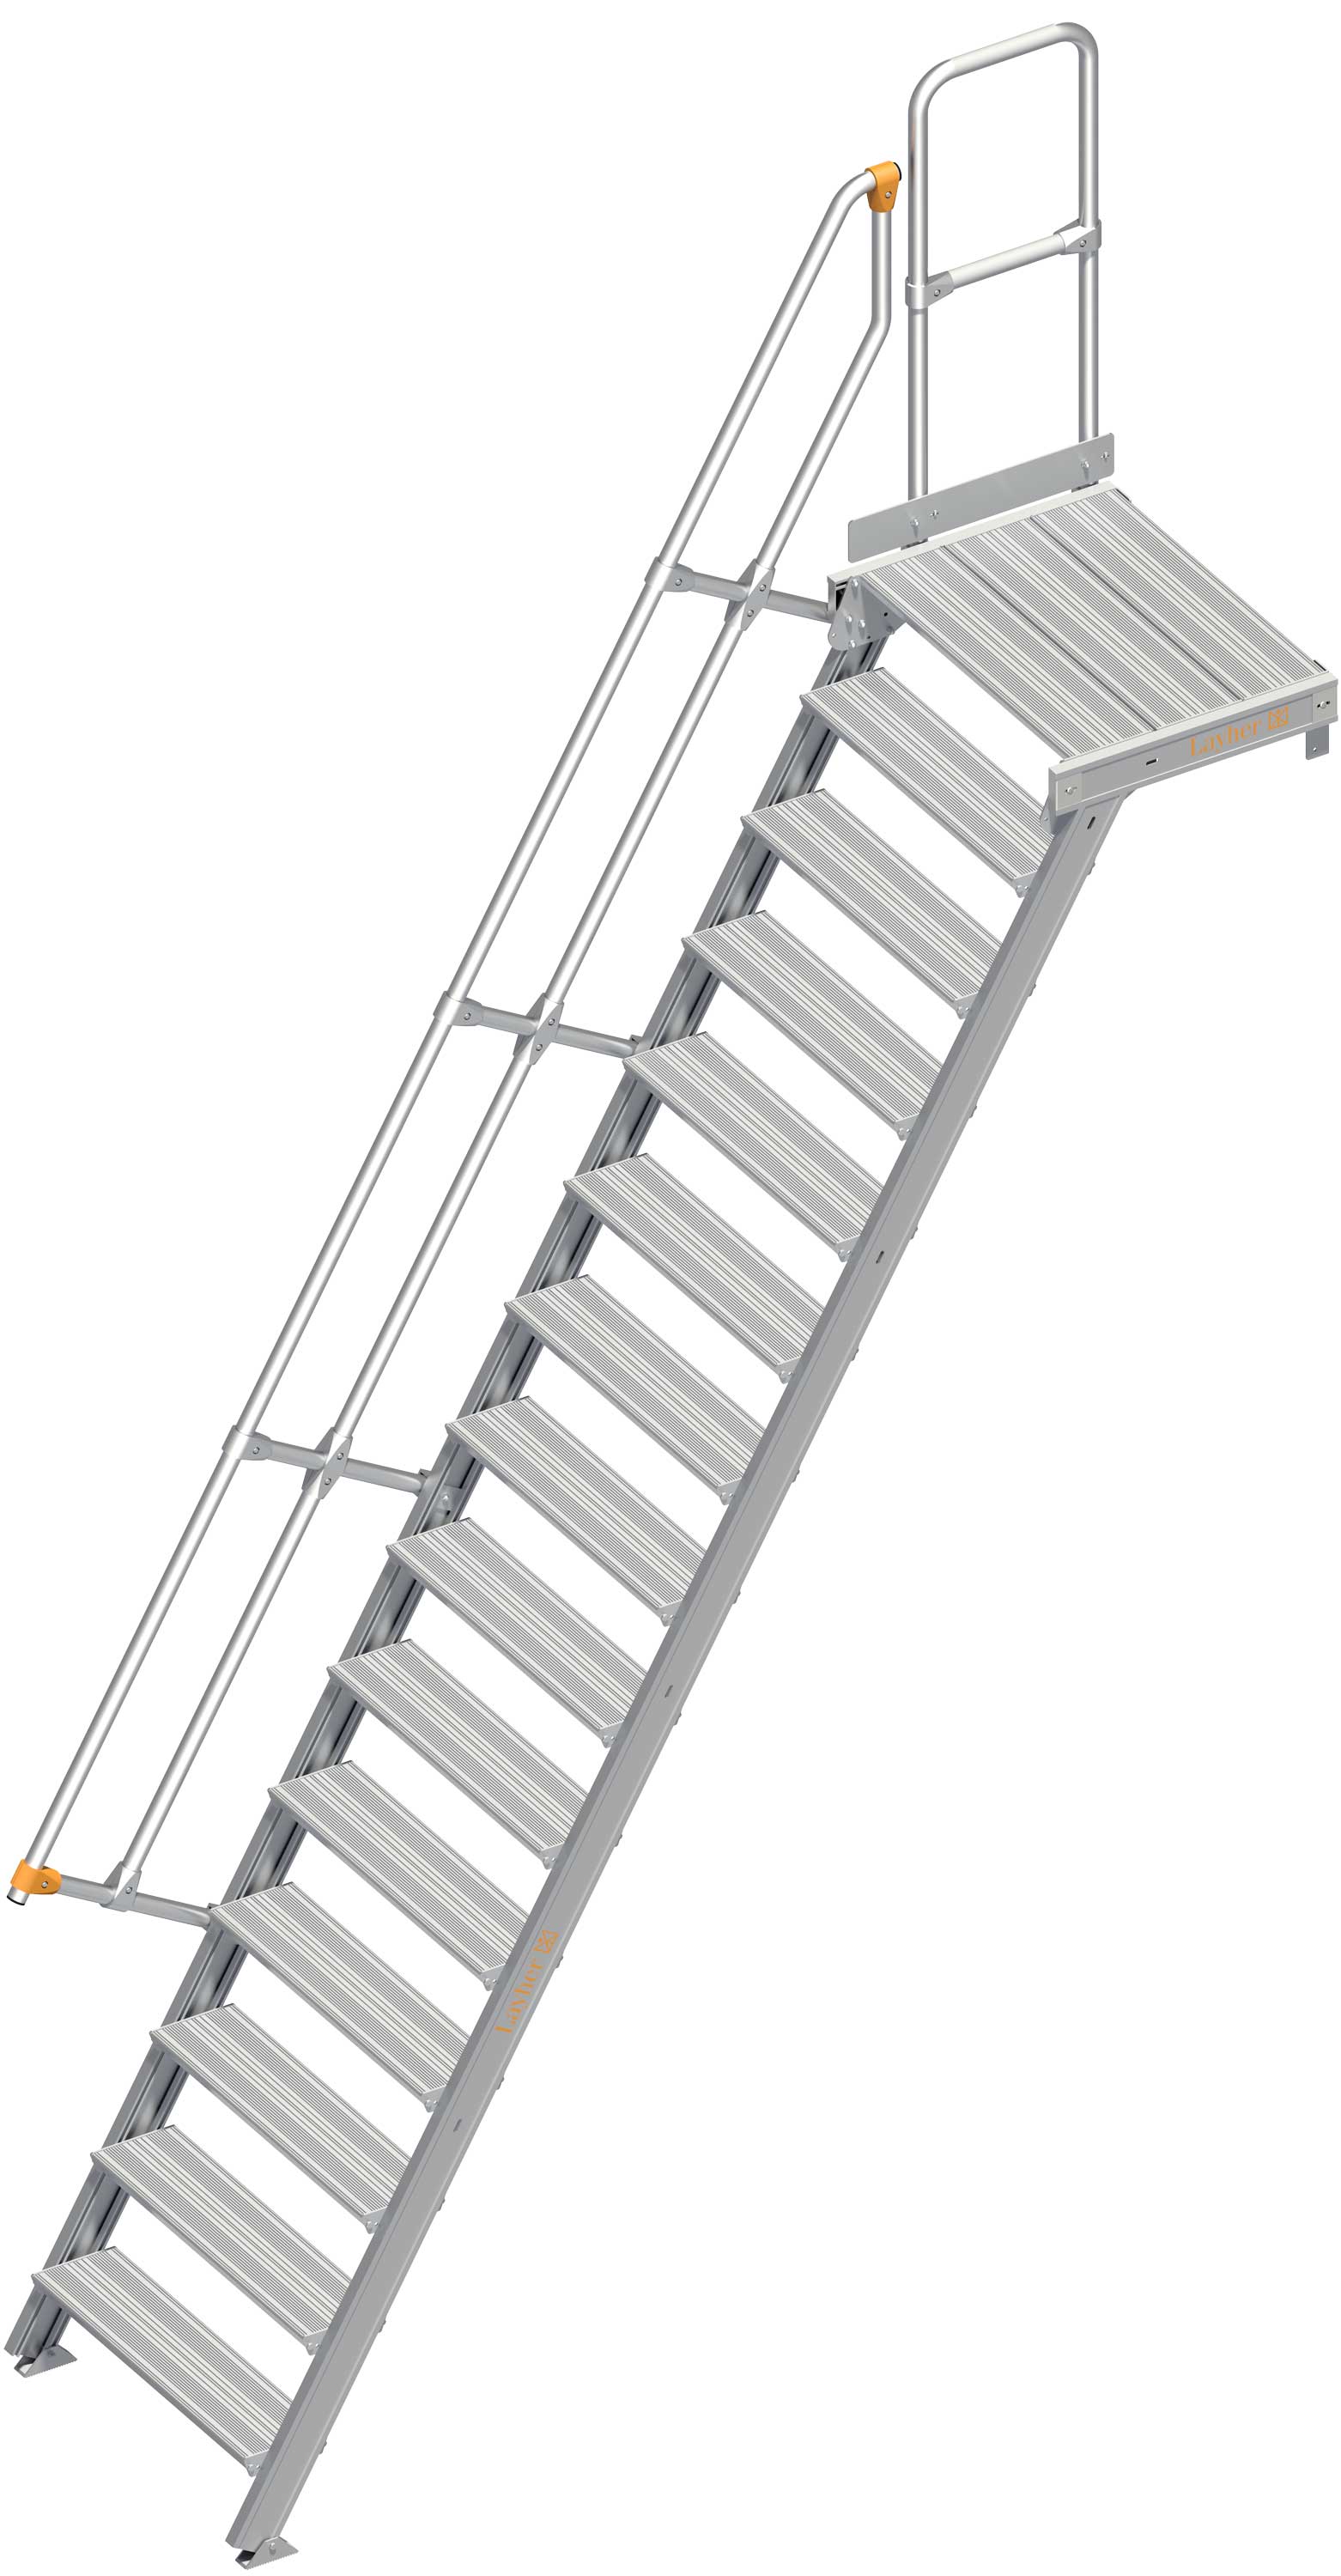 Layher Plattformtreppe 60° SG 15 Stufen - 800 mm breit